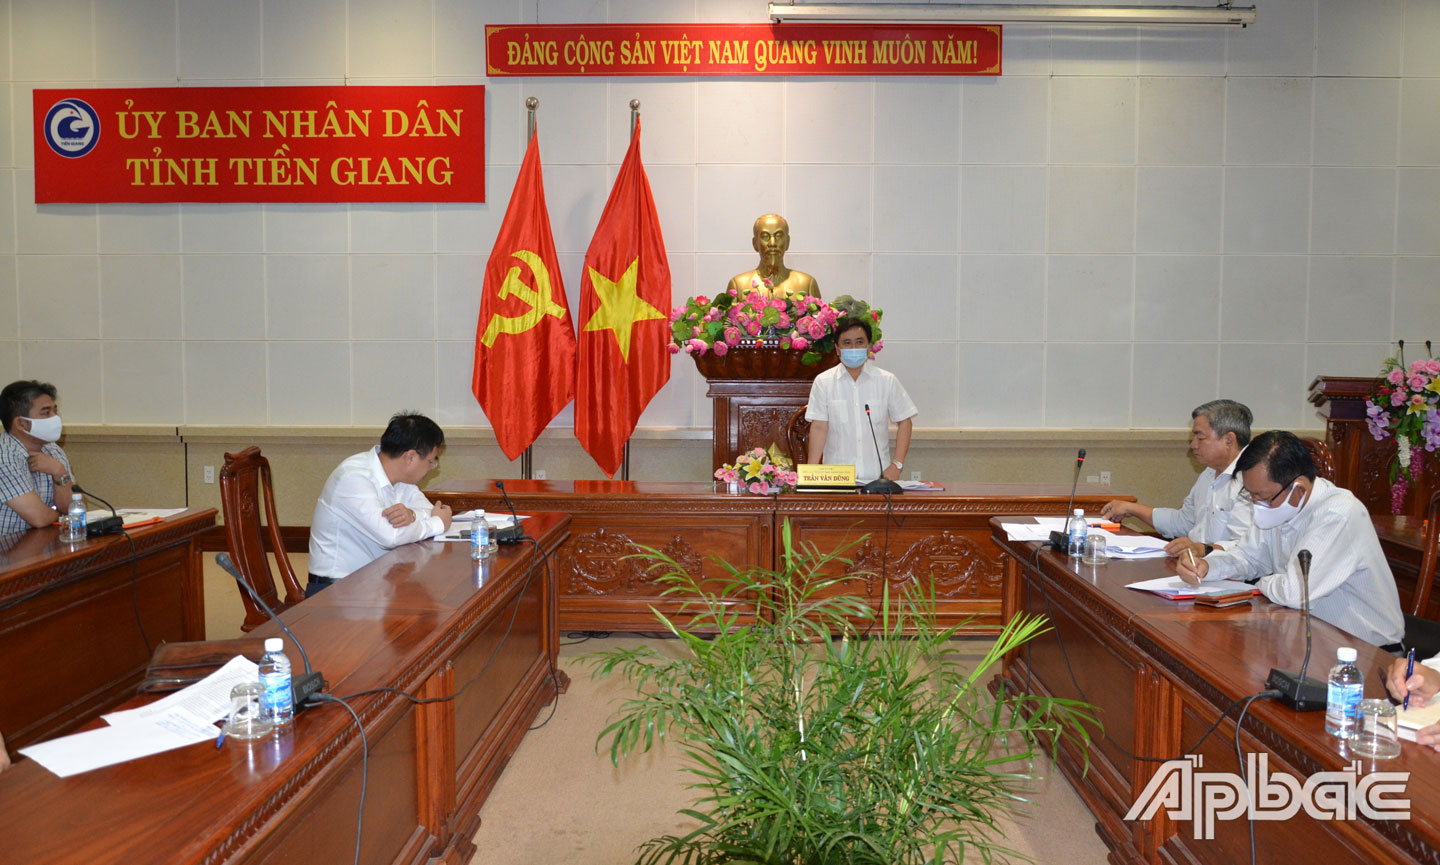  Đồng chí Trần Văn Dũng phát biểu tại buổi làm việc.